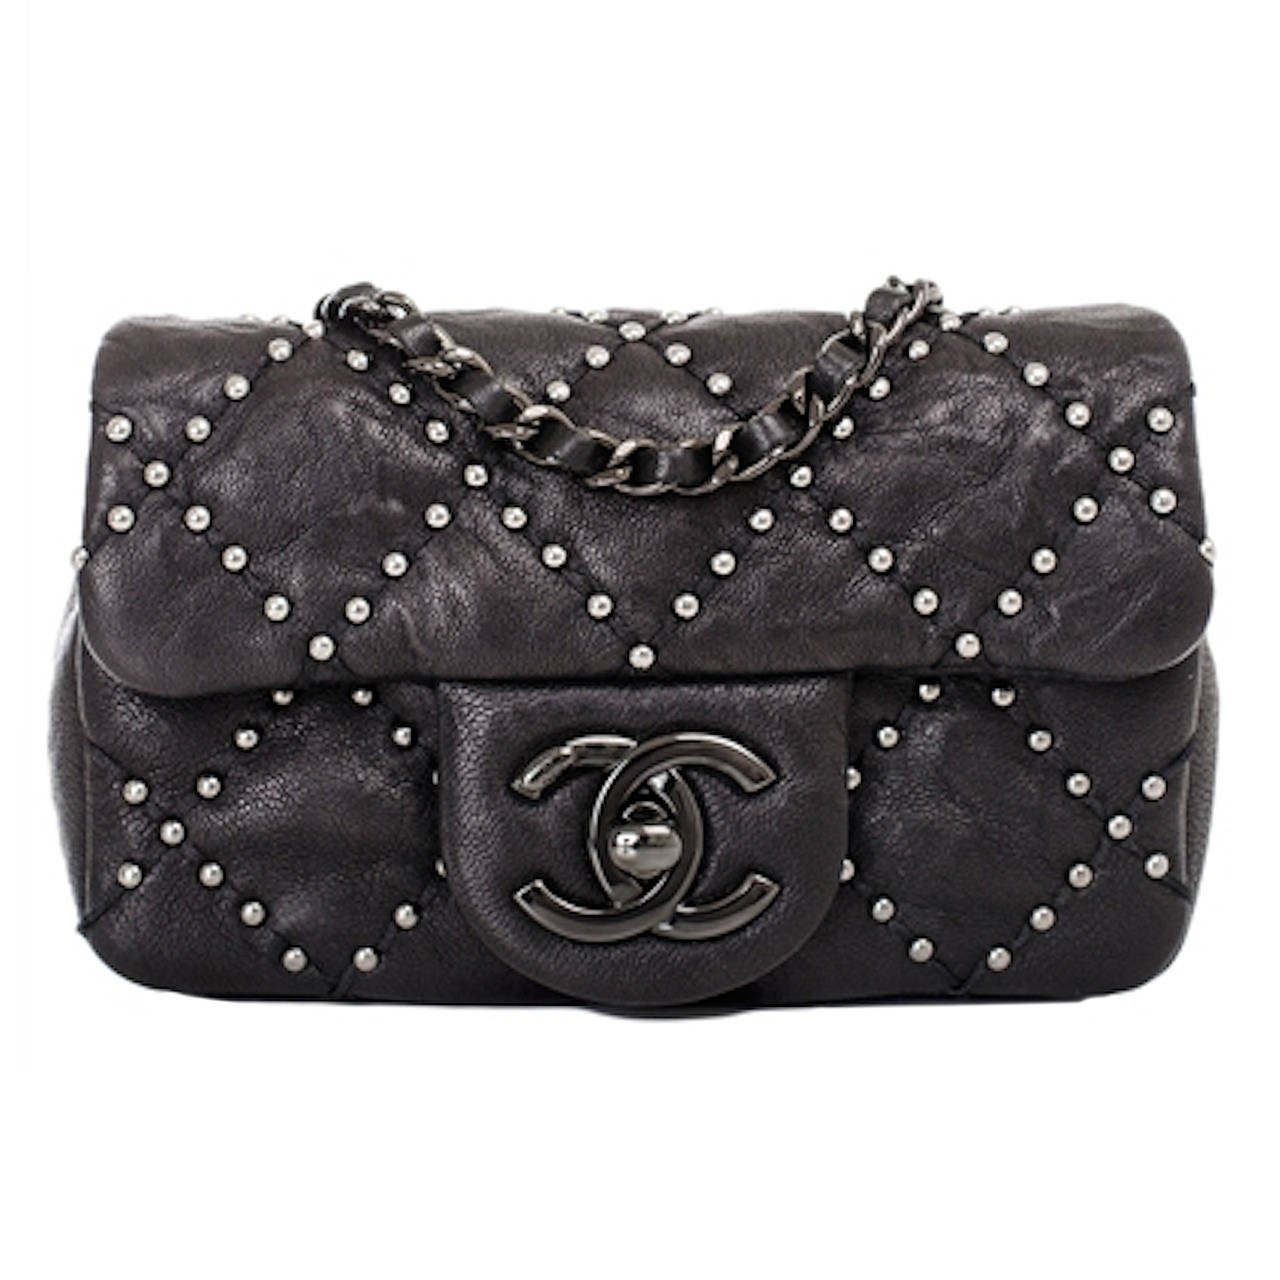 Chanel Black Lambskin Mini Studded Flap Bag